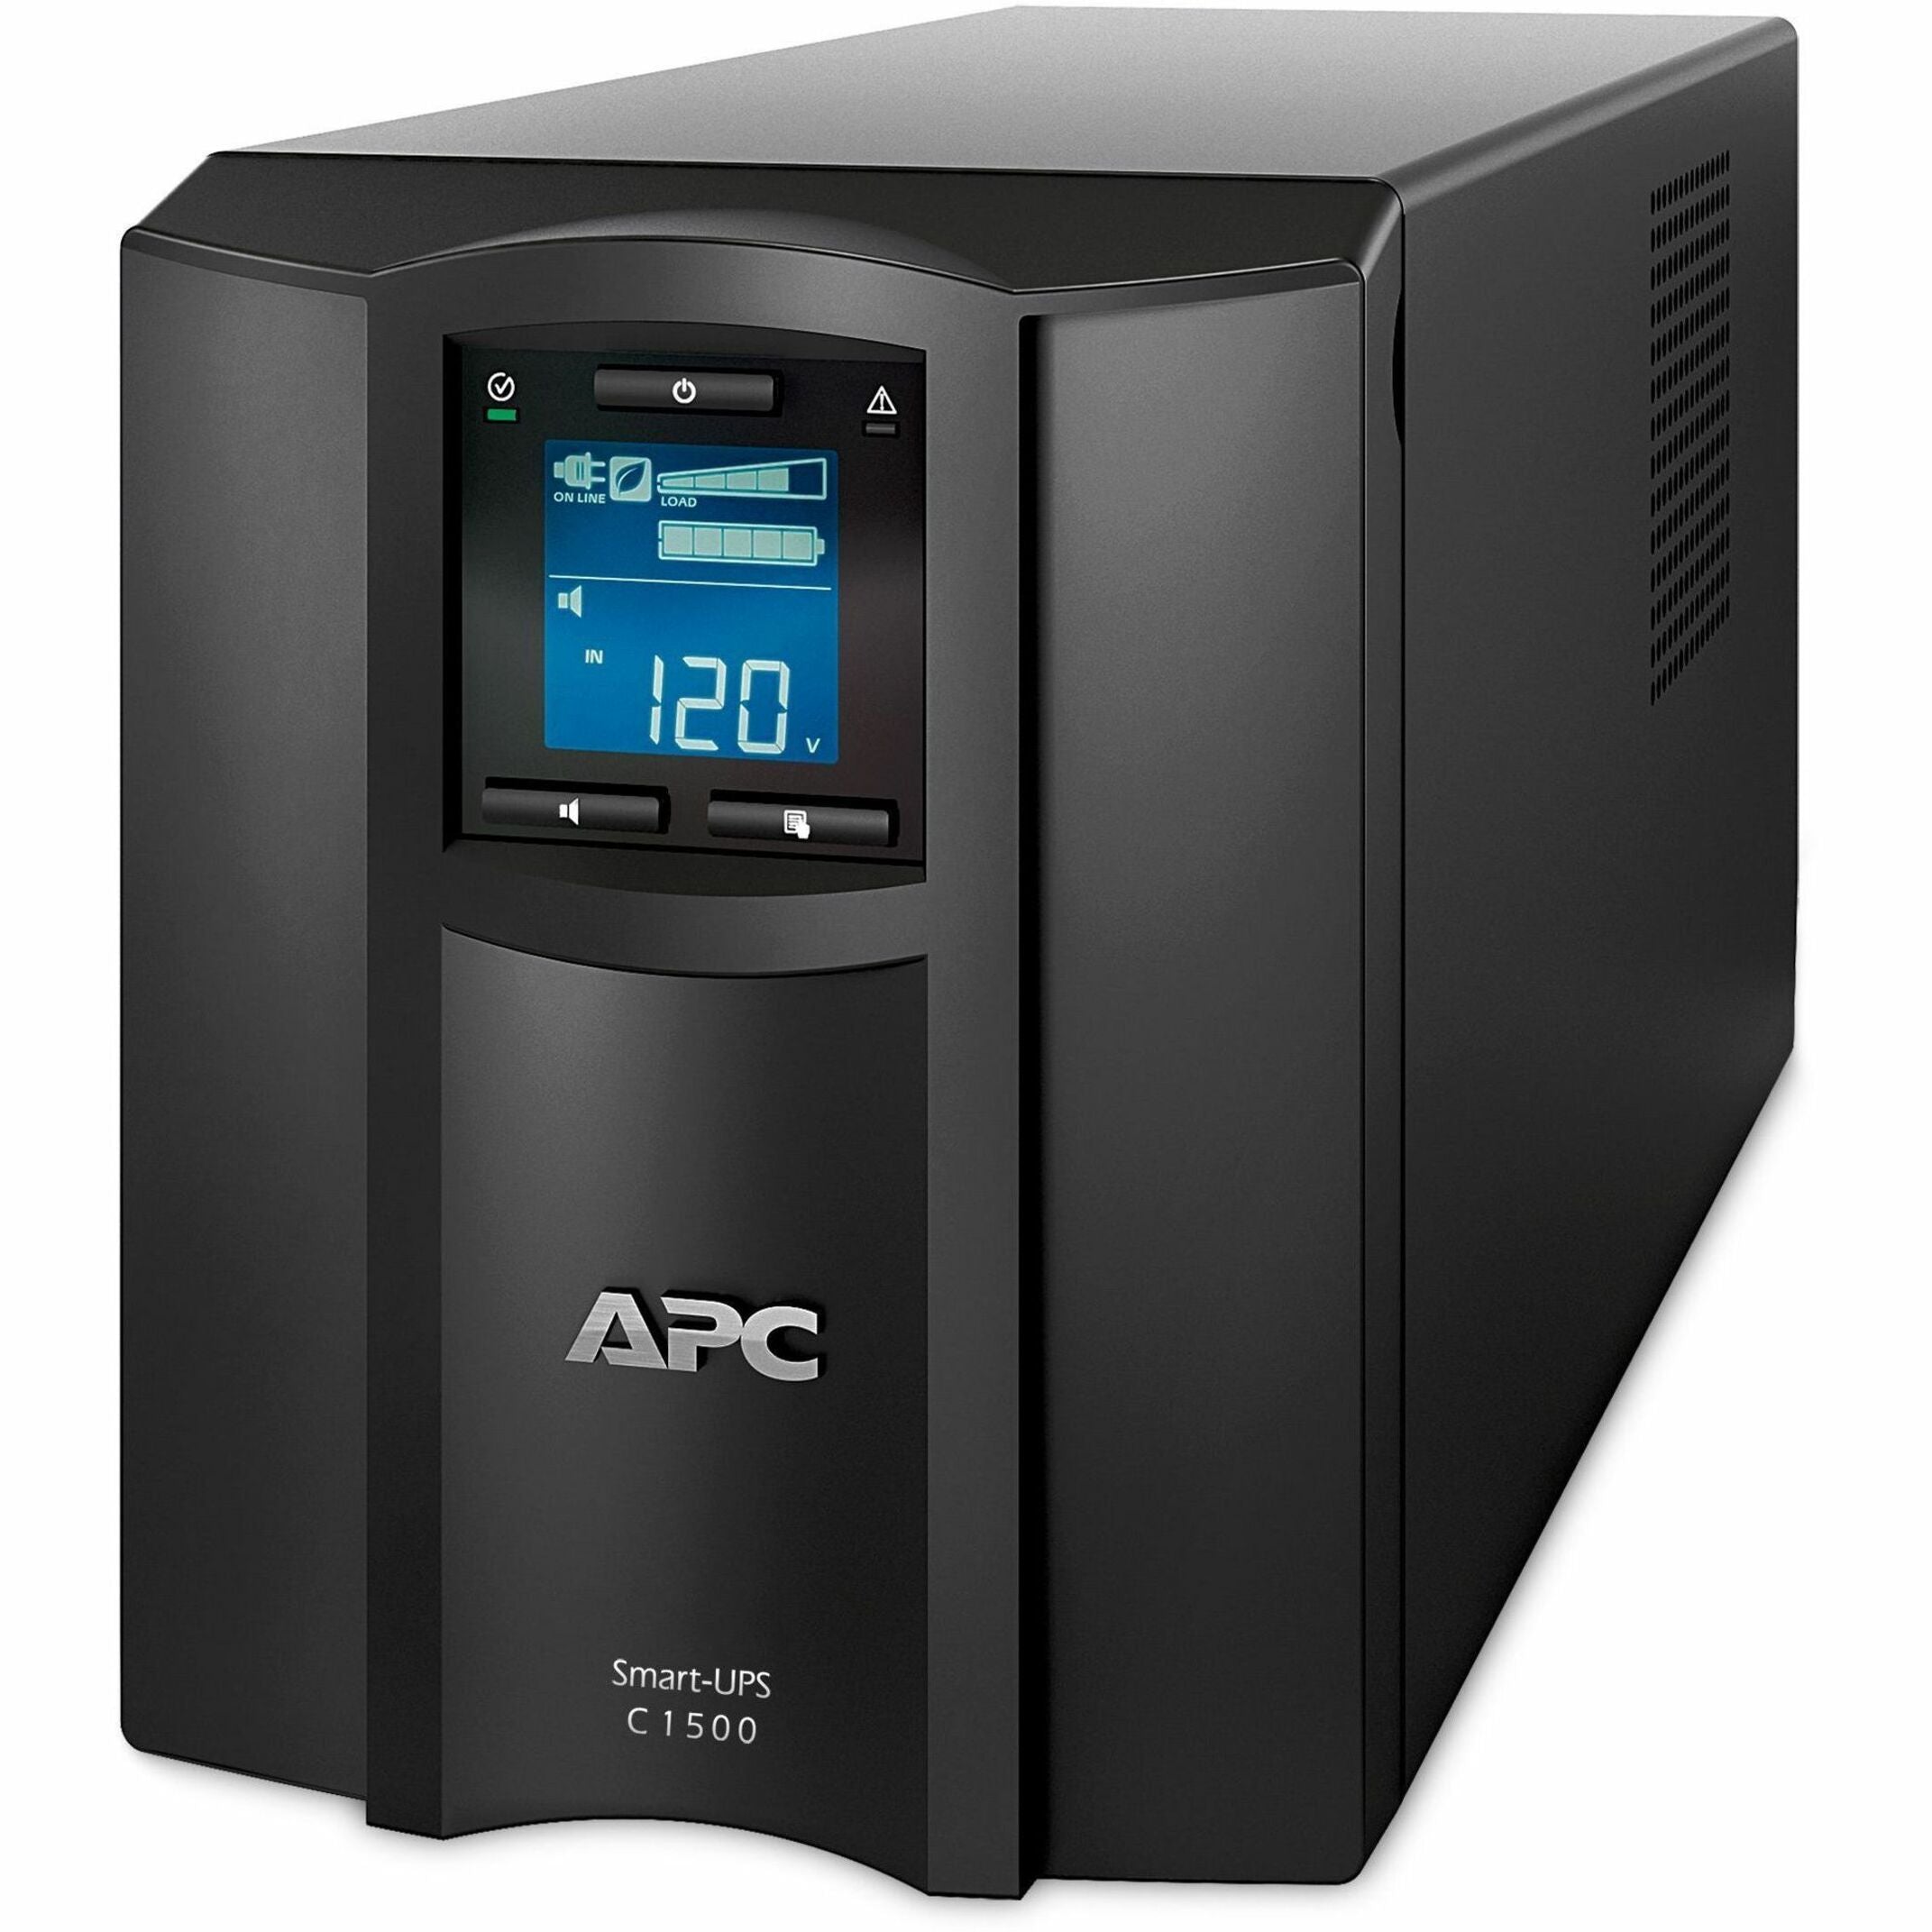 APC Smart-UPS SMC1500C 1500VA Desktop UPS